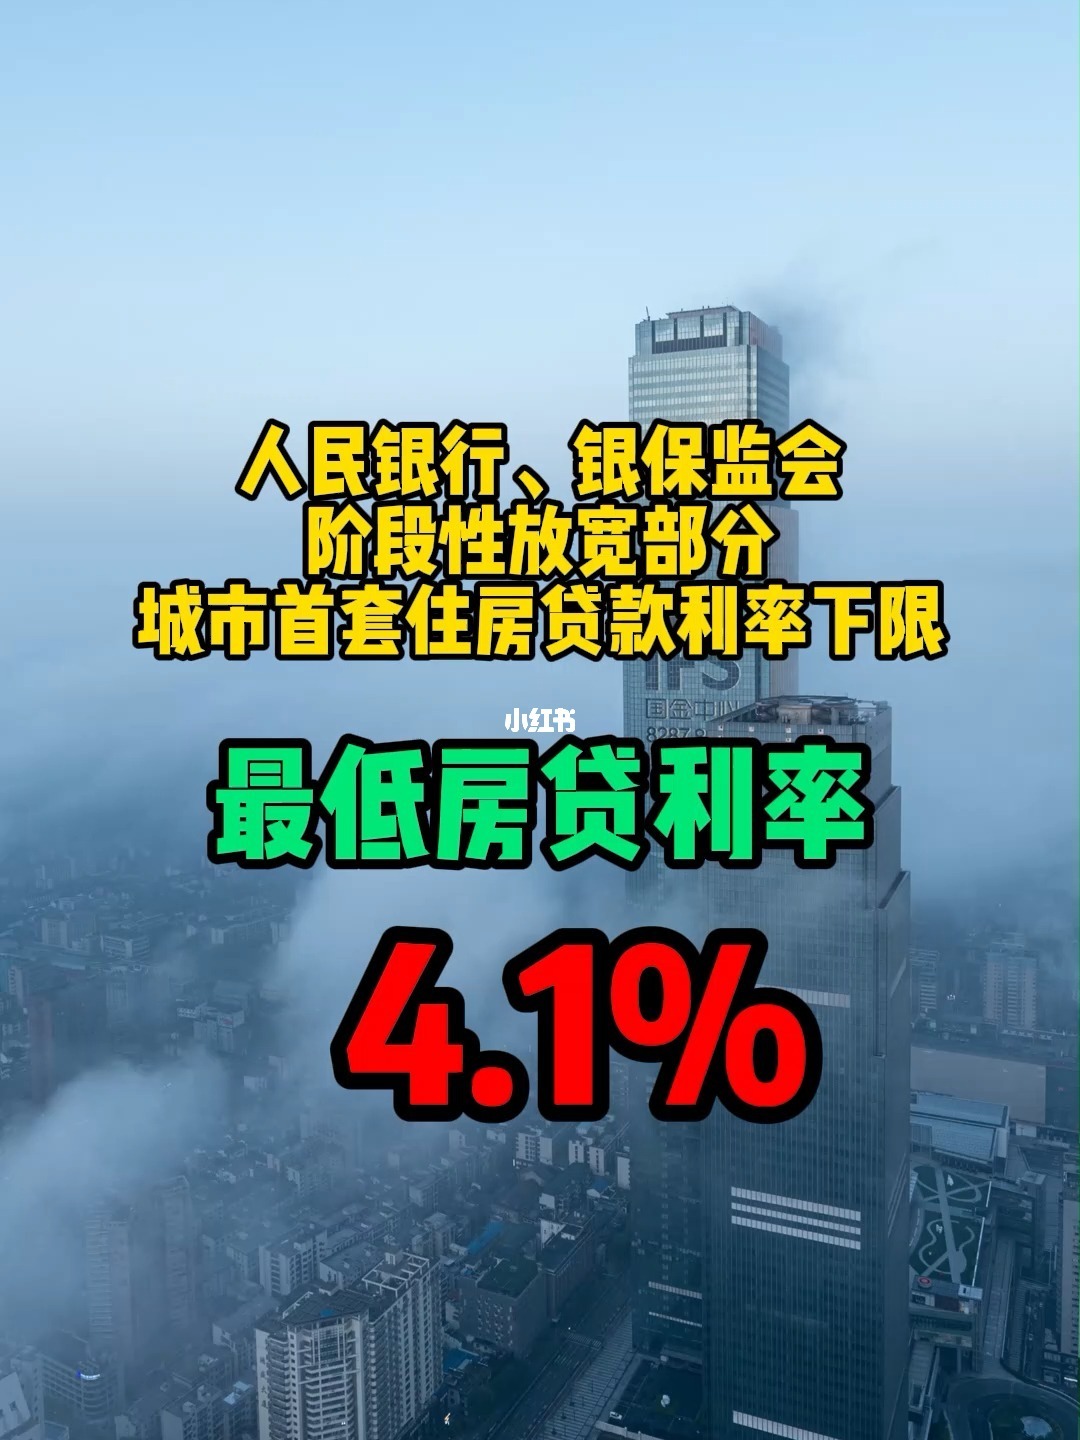 最新房贷利率广州_广州房贷lpr加多少点_广州最新房贷lpr利率